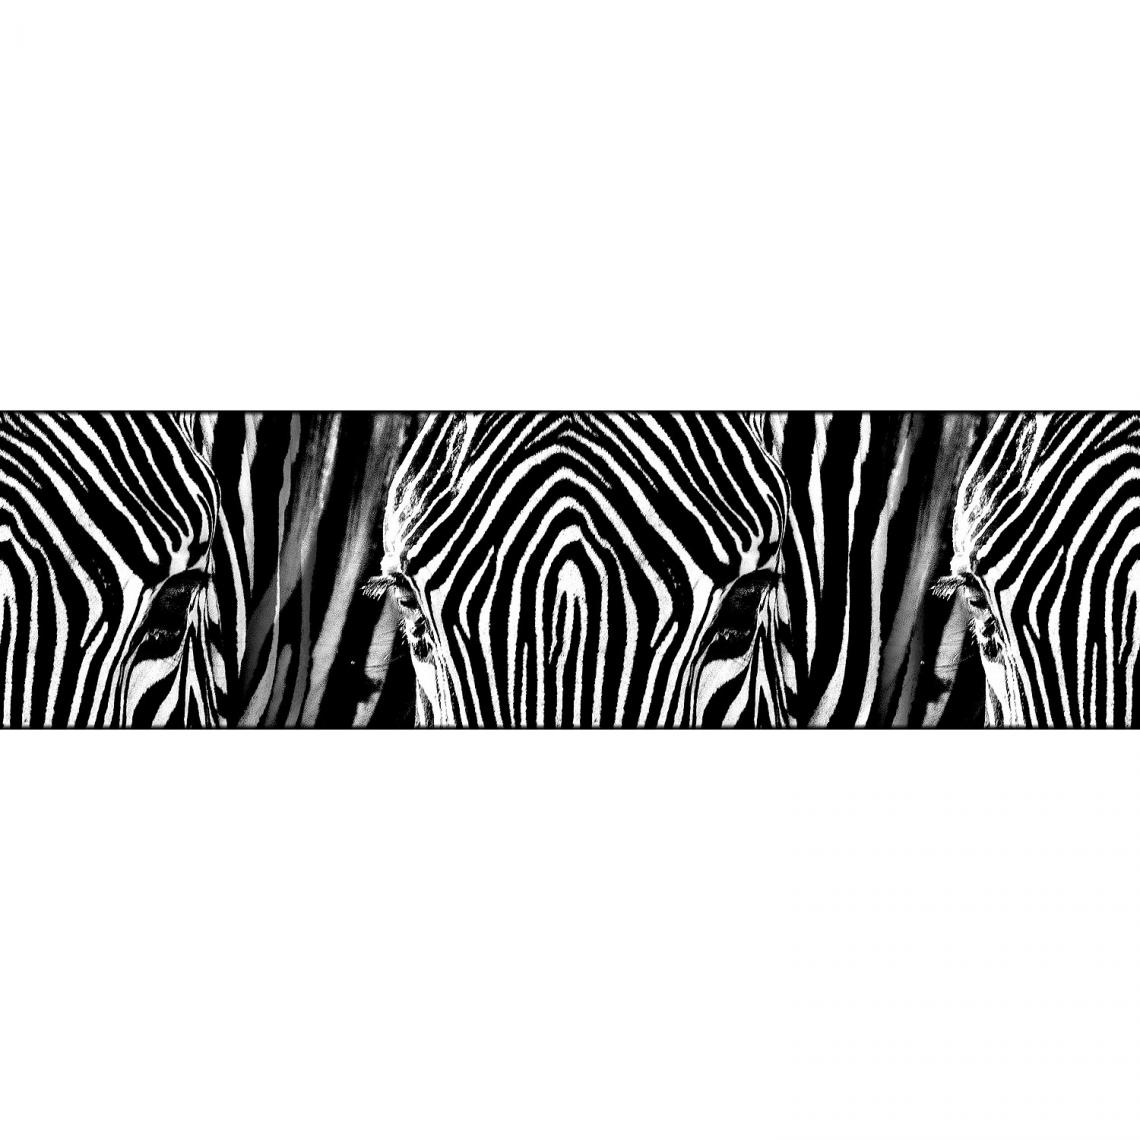 Ag Art - Frise auto-collante Zebra - 1 rouleau de 14 cm x 500 cm - Frise murale